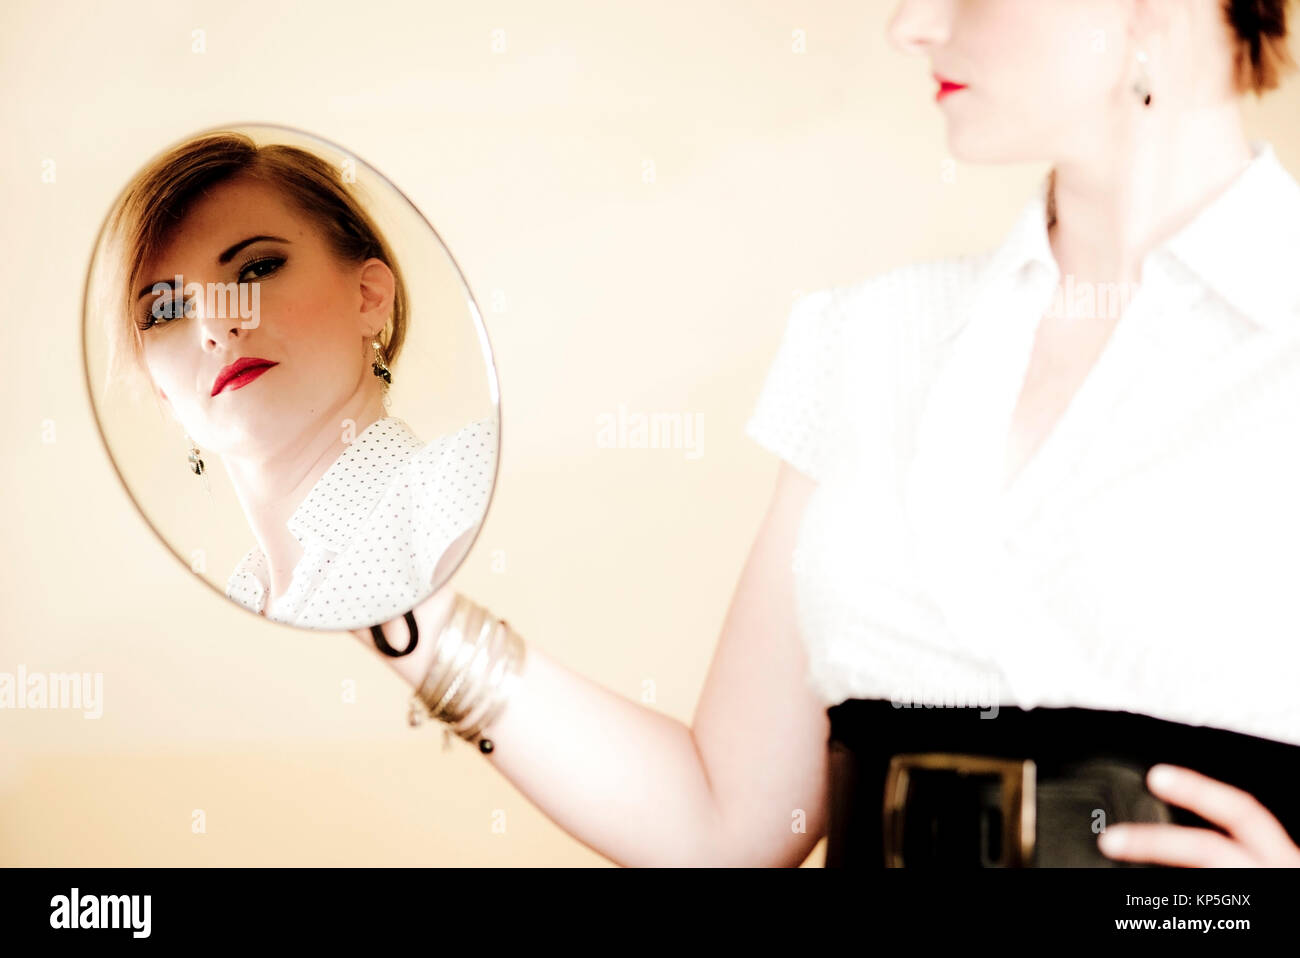 Spiegelbild einer jungen, attraktiven Frau - giovani, donna attraente in uno specchio Foto Stock